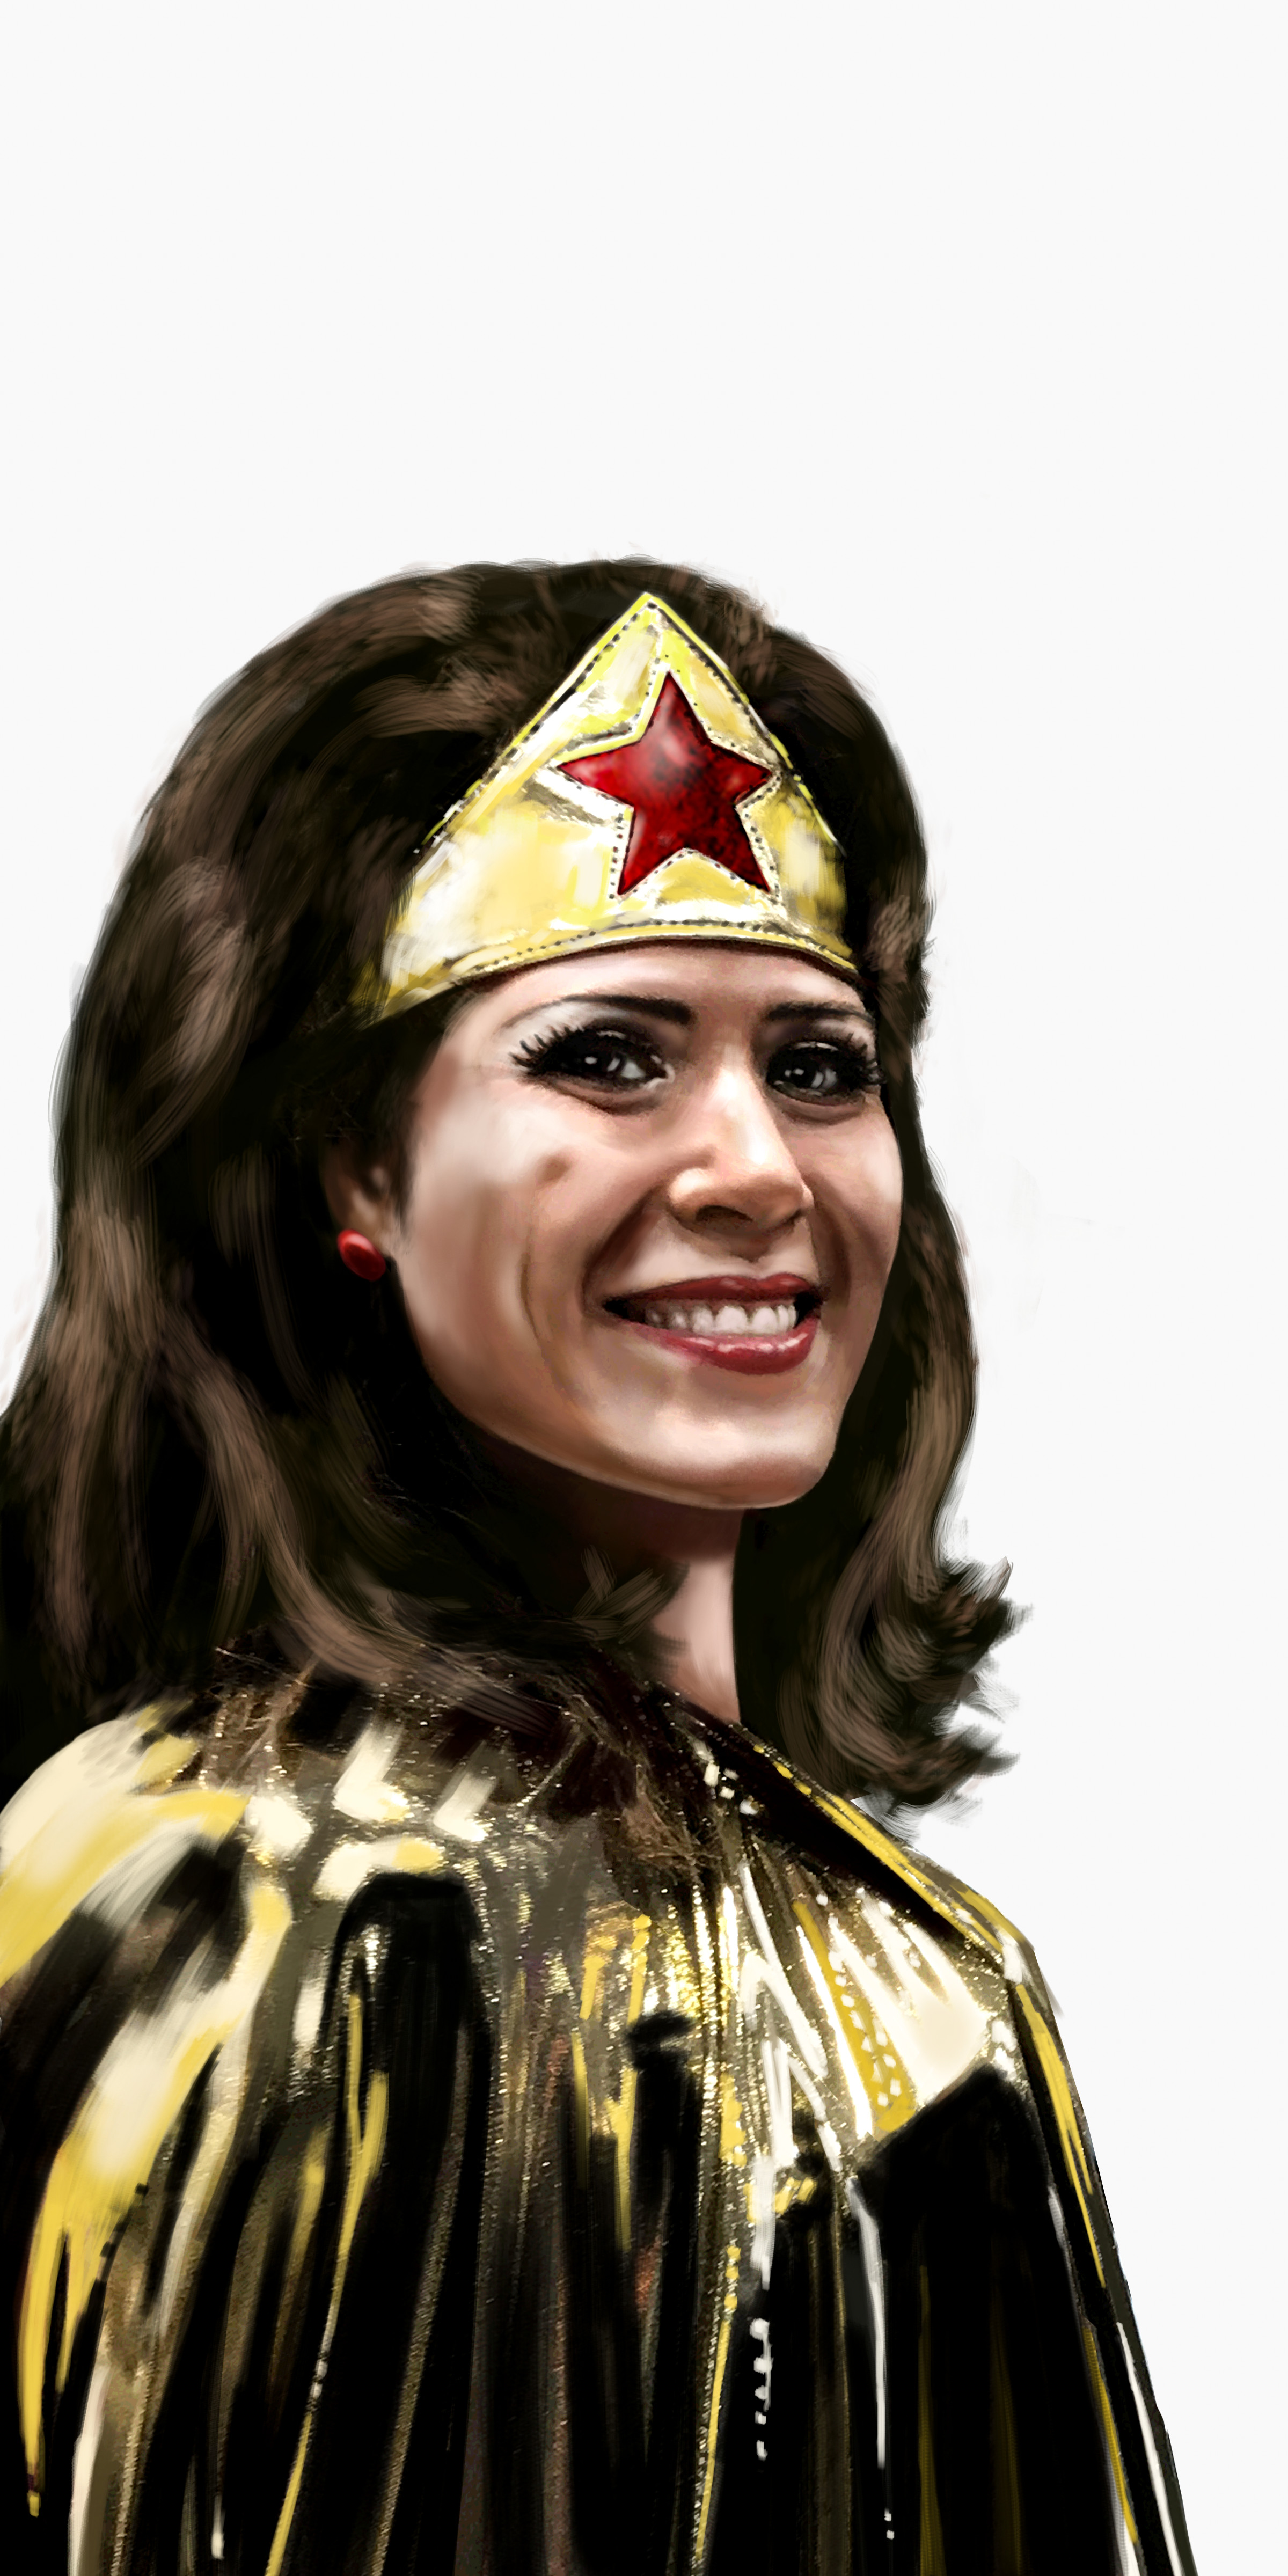 Wonder Woman portrait 3
Digital portrait